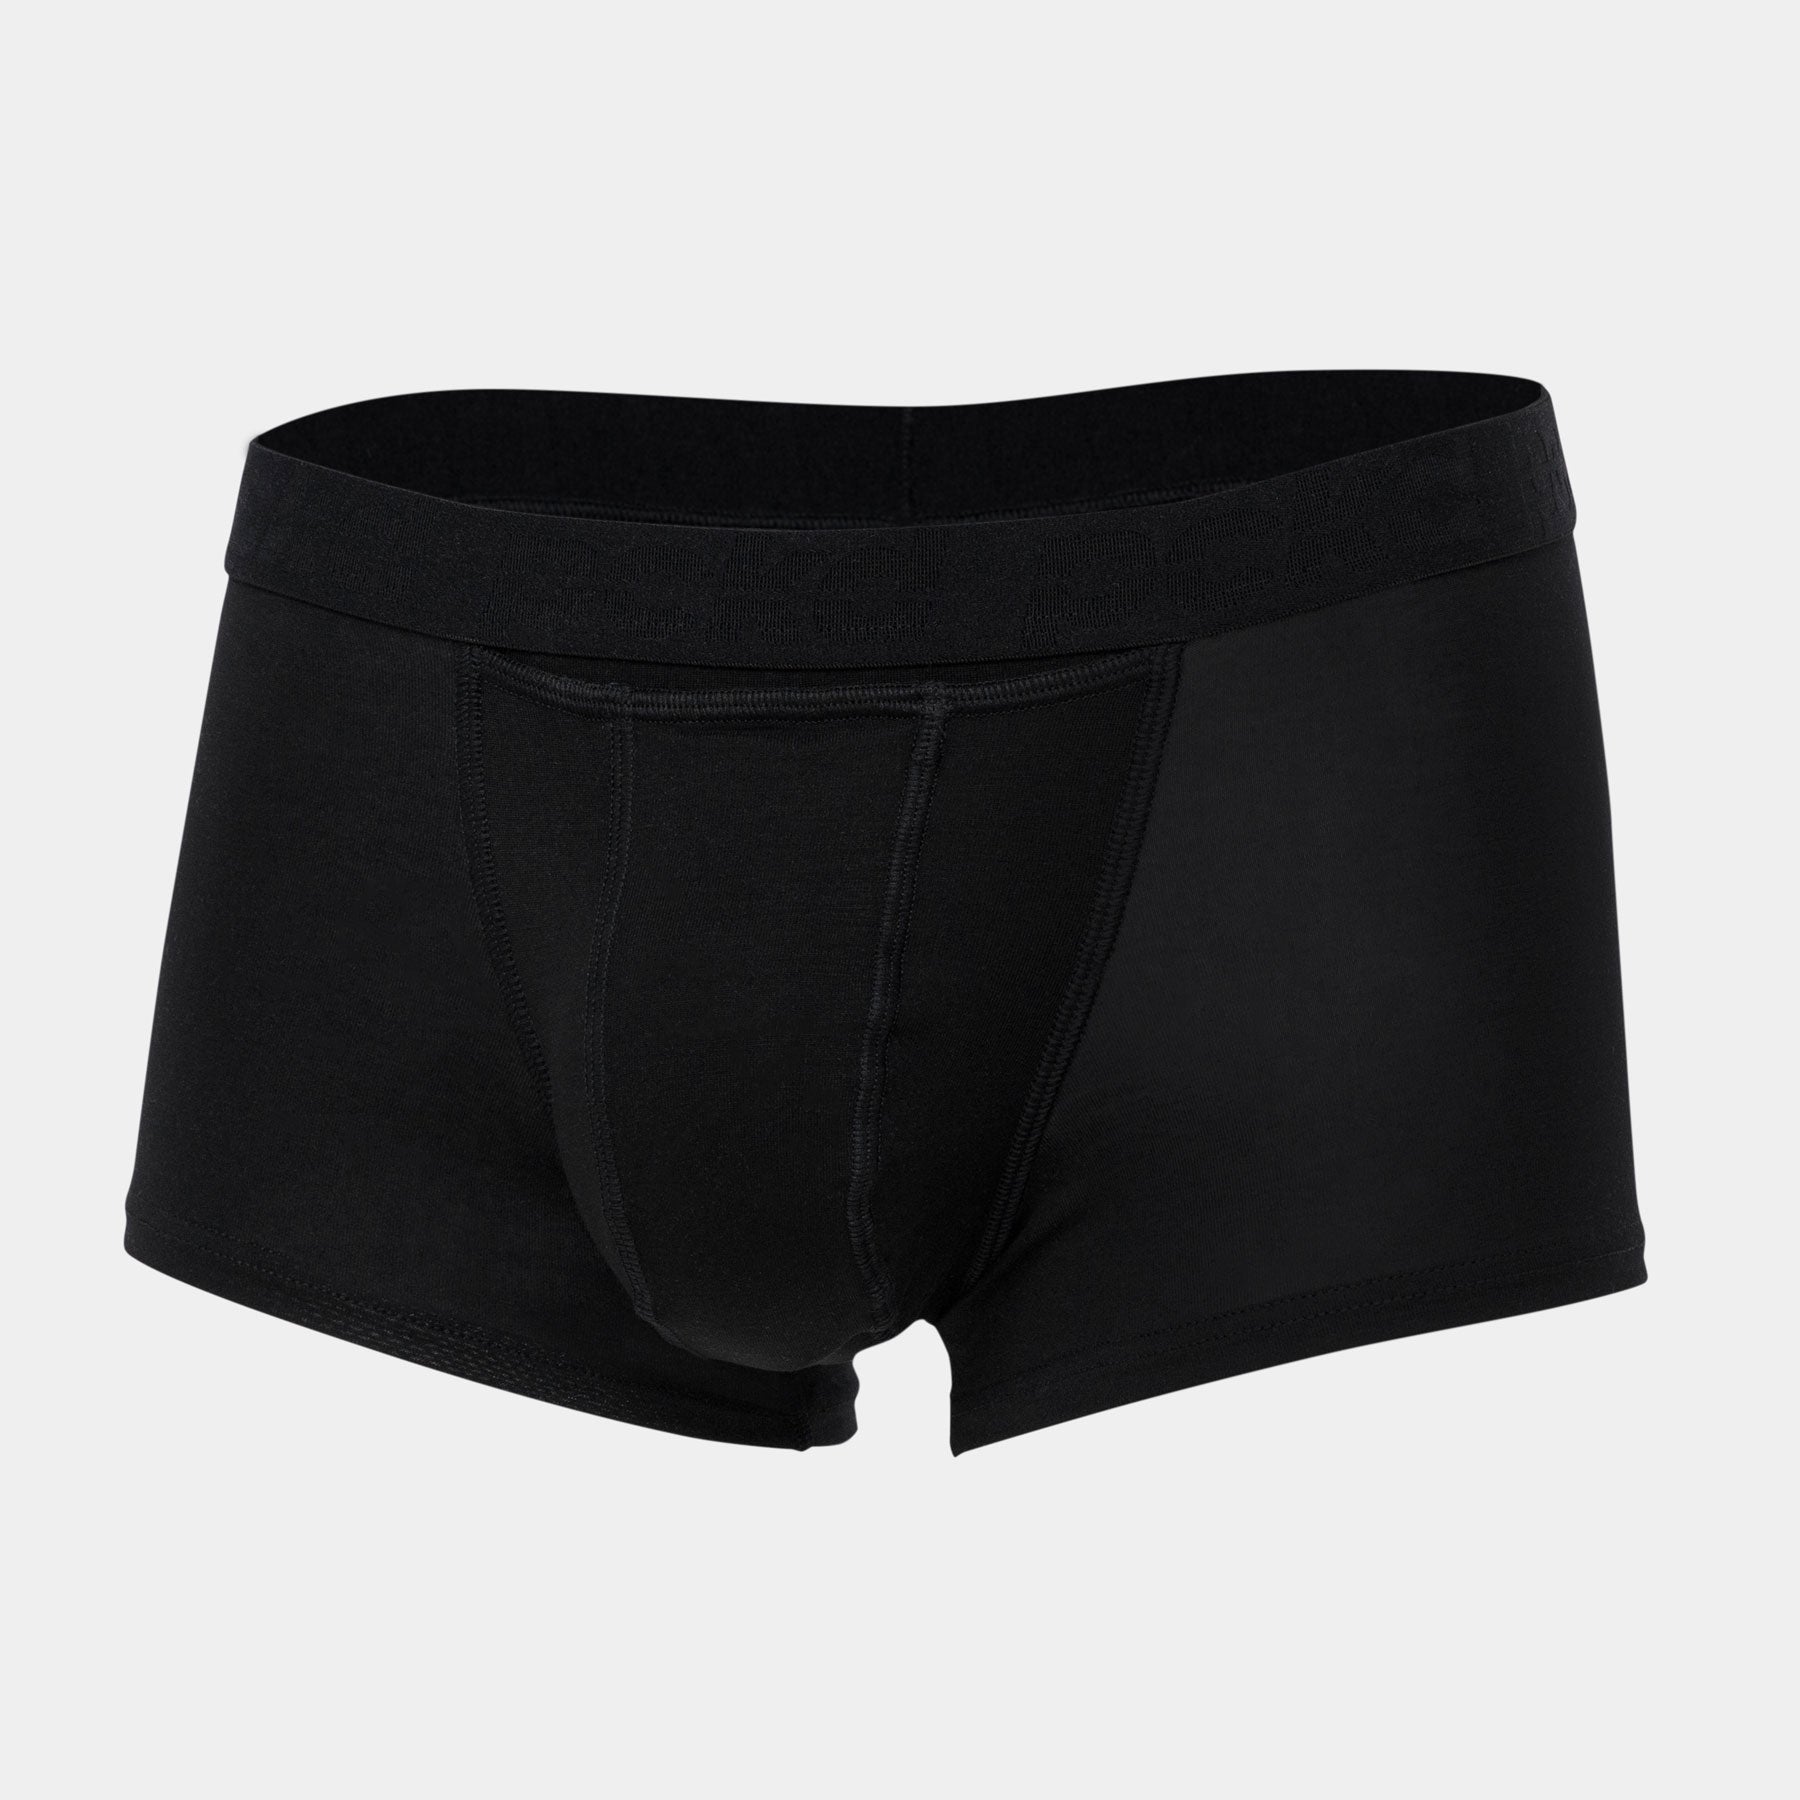 Schwarze eng anliegende lange Boxershorts (Boxer Briefs) aus Lyocell -  Innovative Beutelunterhosen (Pouch Underwear) in mehreren Farben | pckd.de  – pckd - underwear done